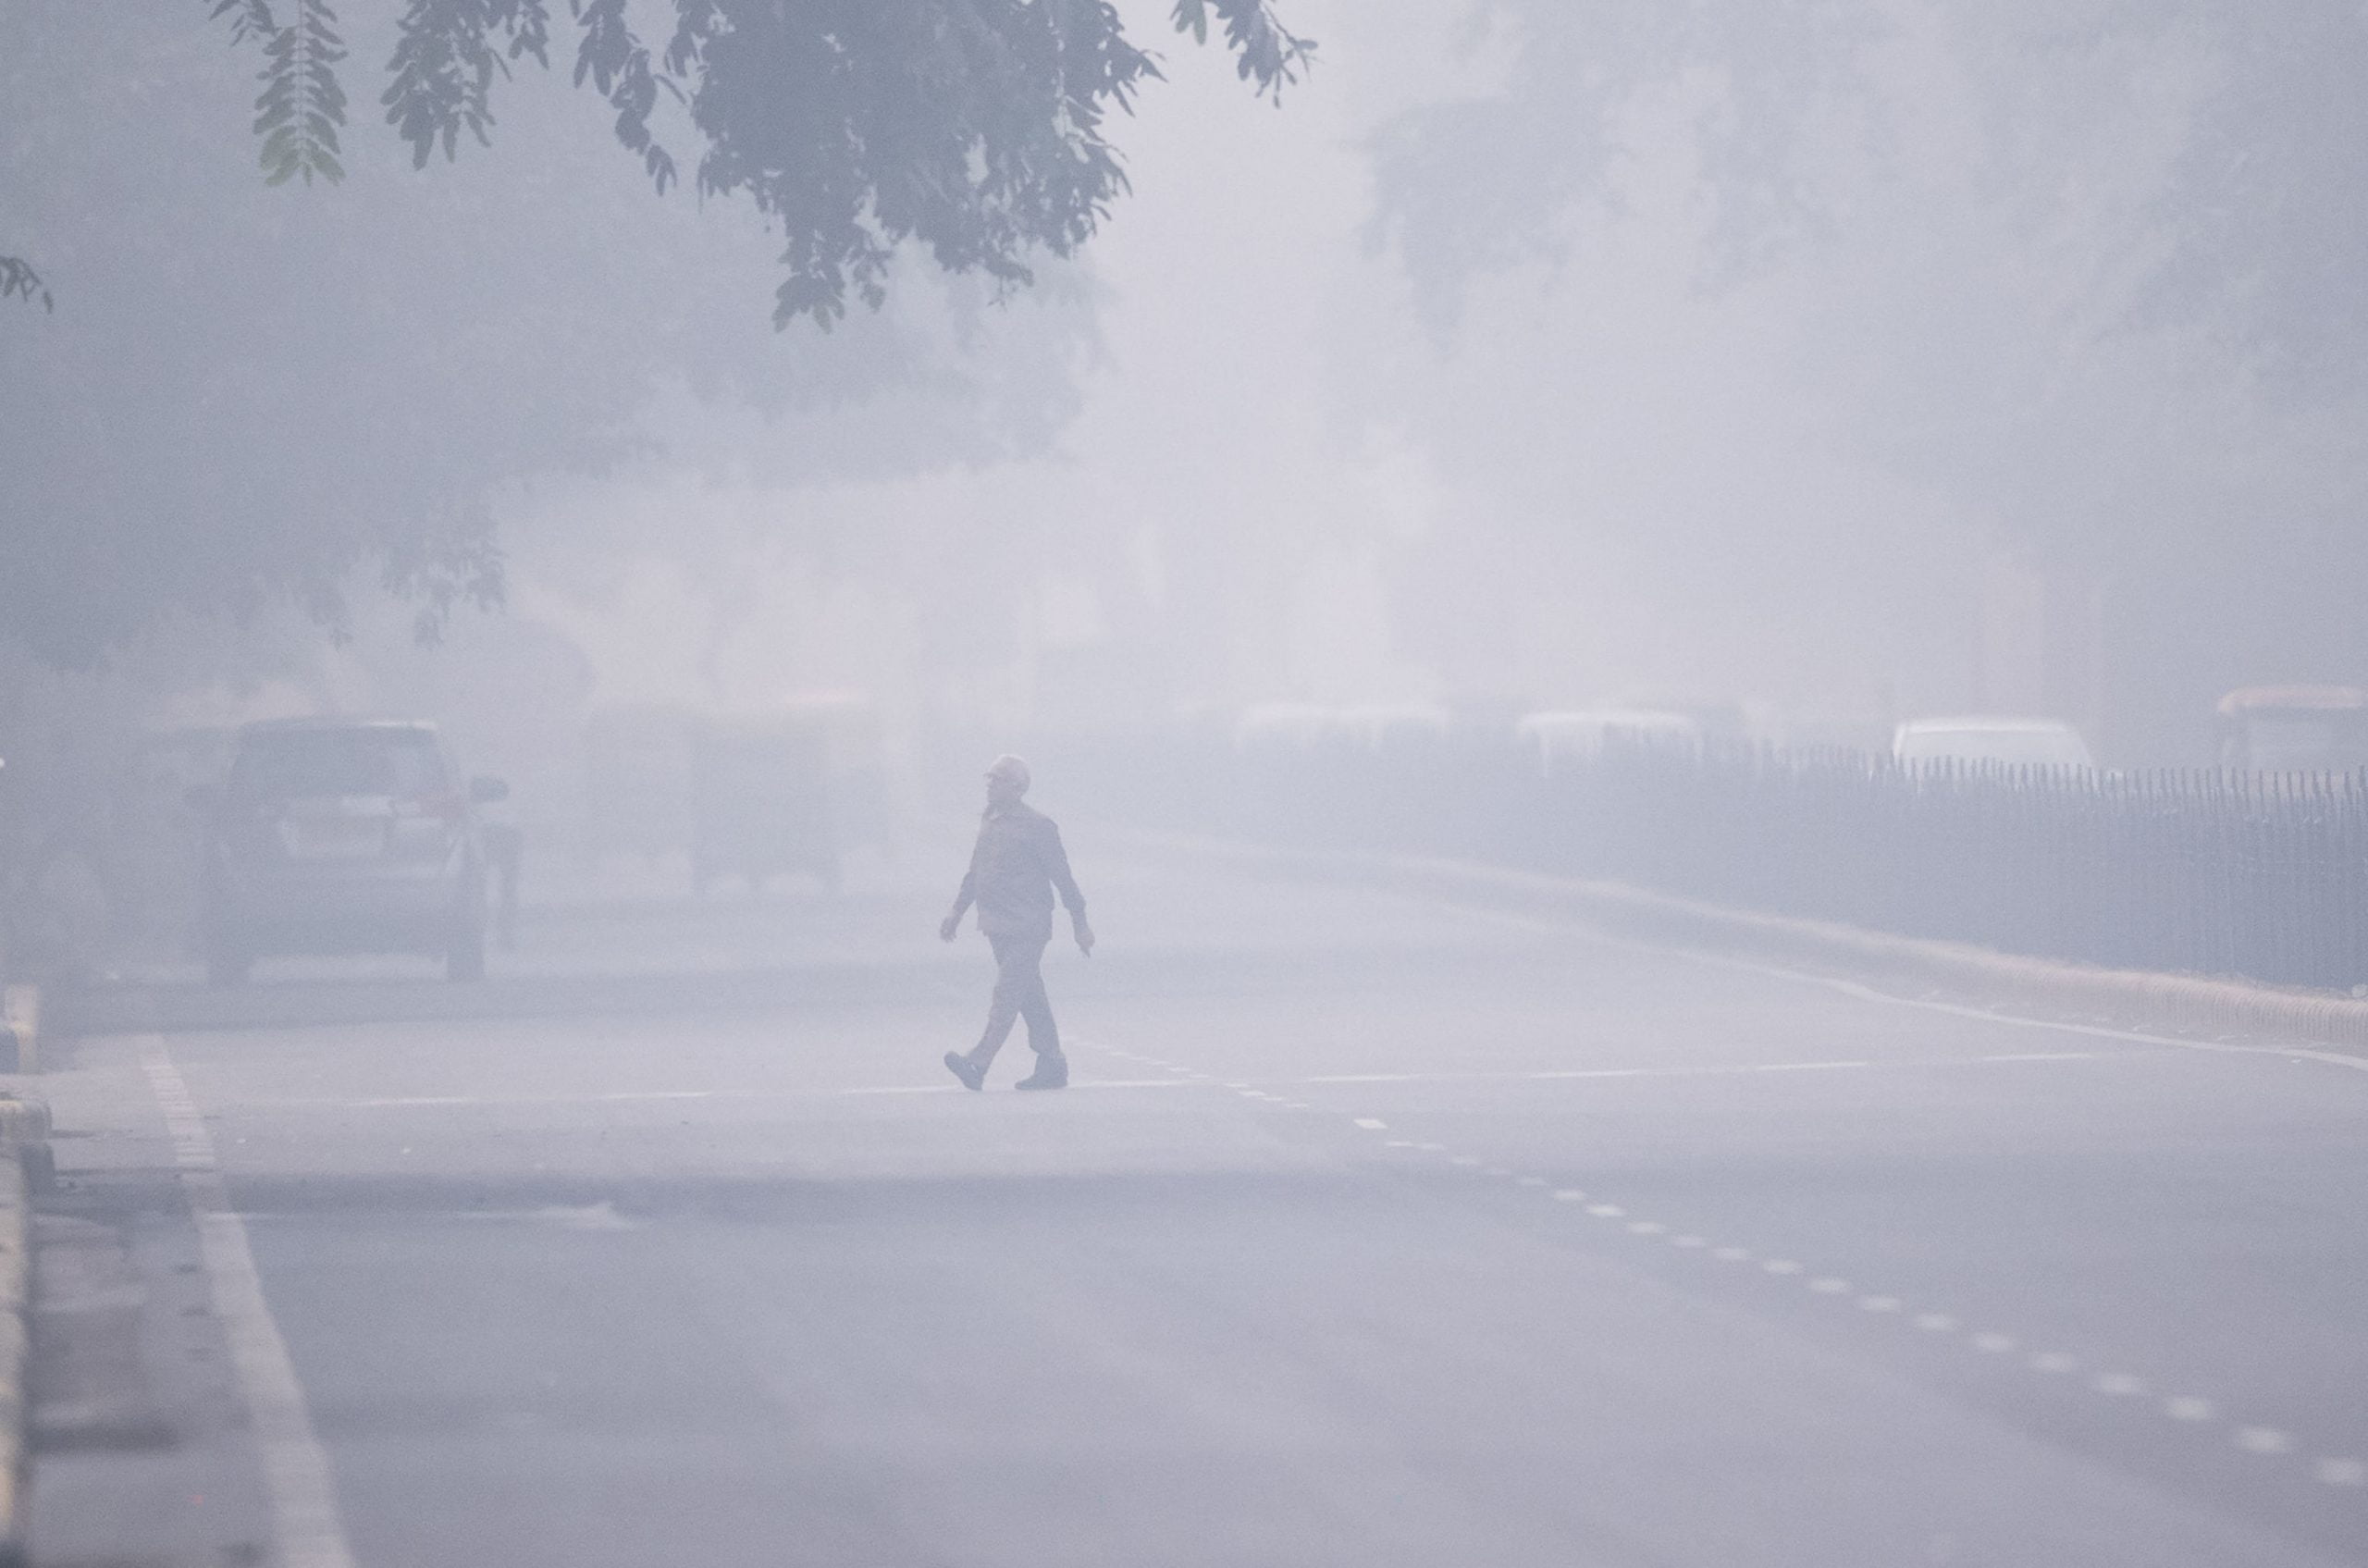 Србија за деценију изгуби читав један град због смога